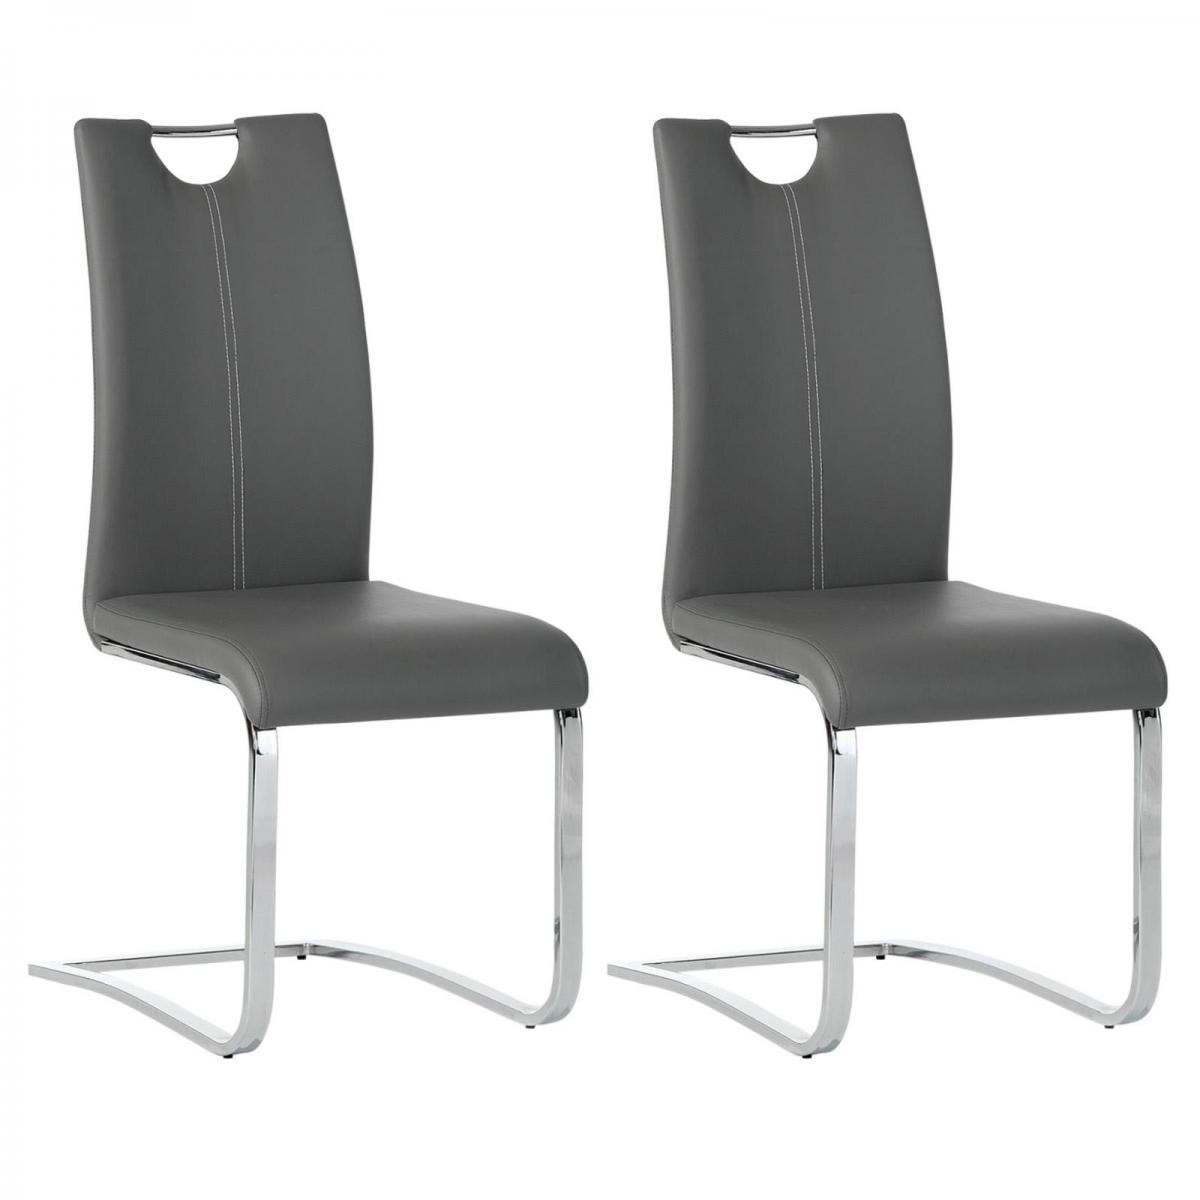 Idimex - Lot de 2 chaises SABA, en synthétique gris - Chaises